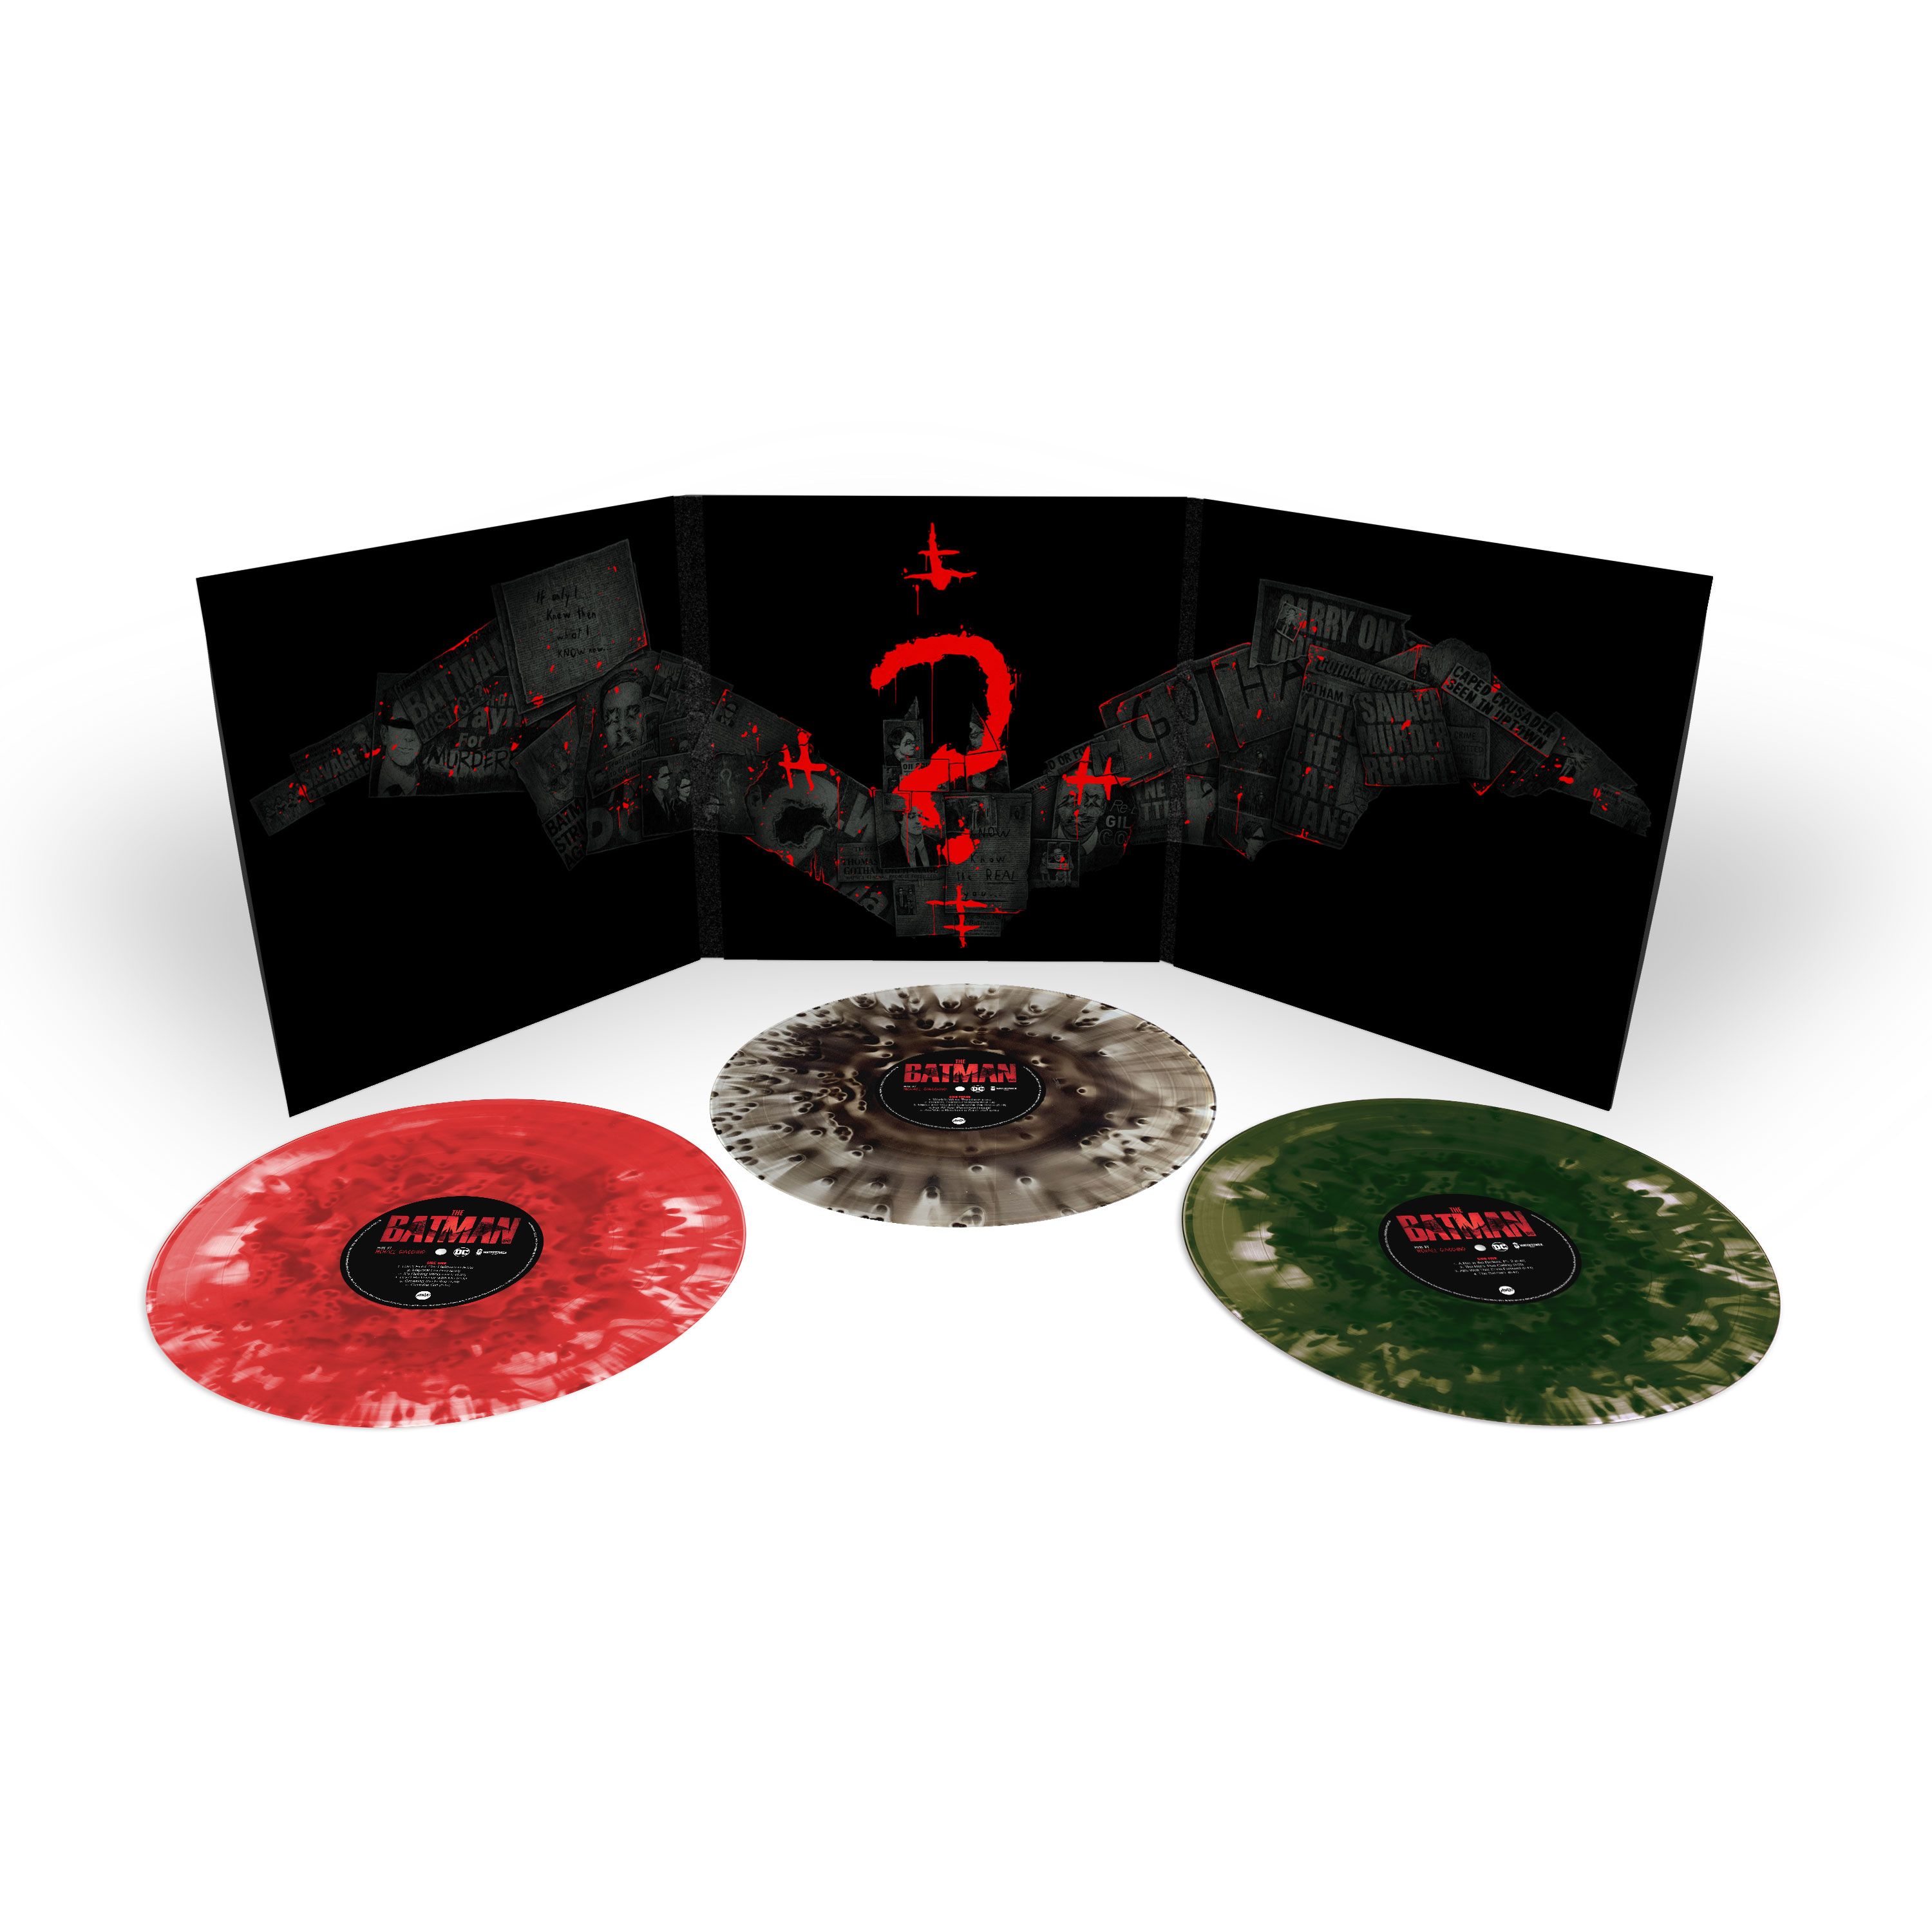 The Batman Vinyl Gatefold and Discs